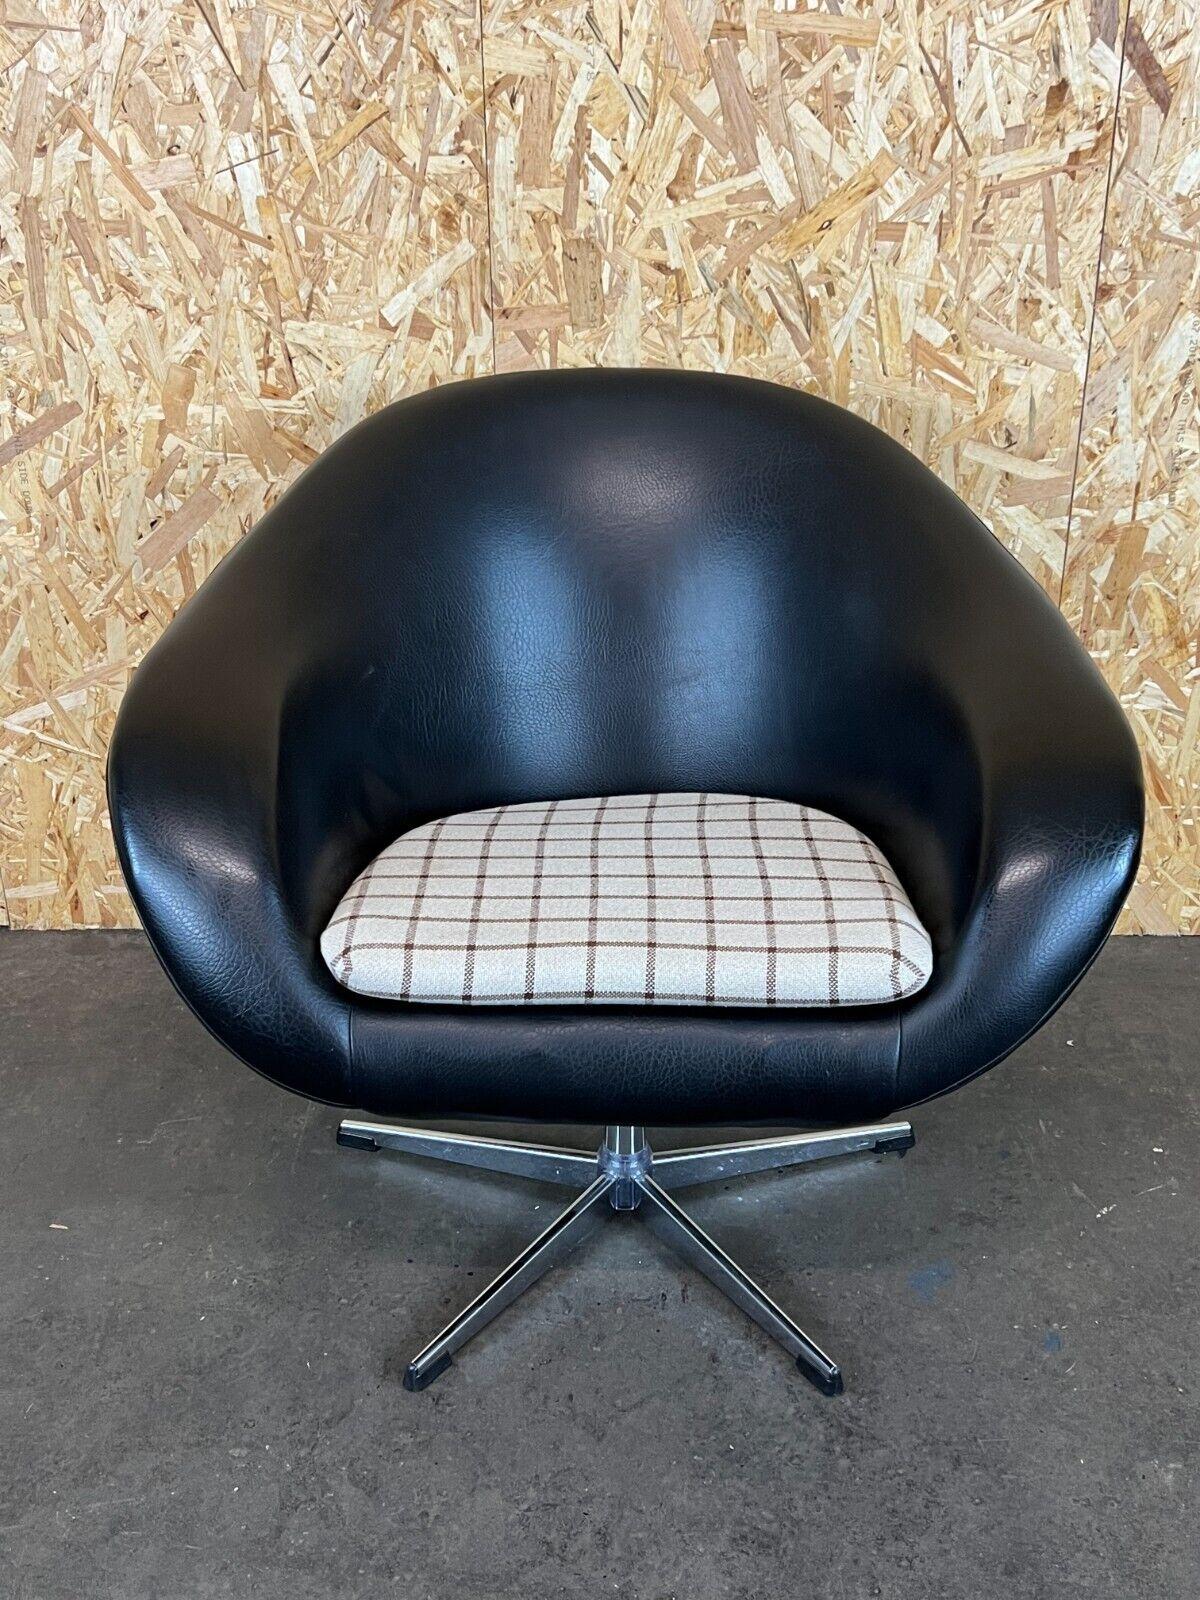 70s style armchair